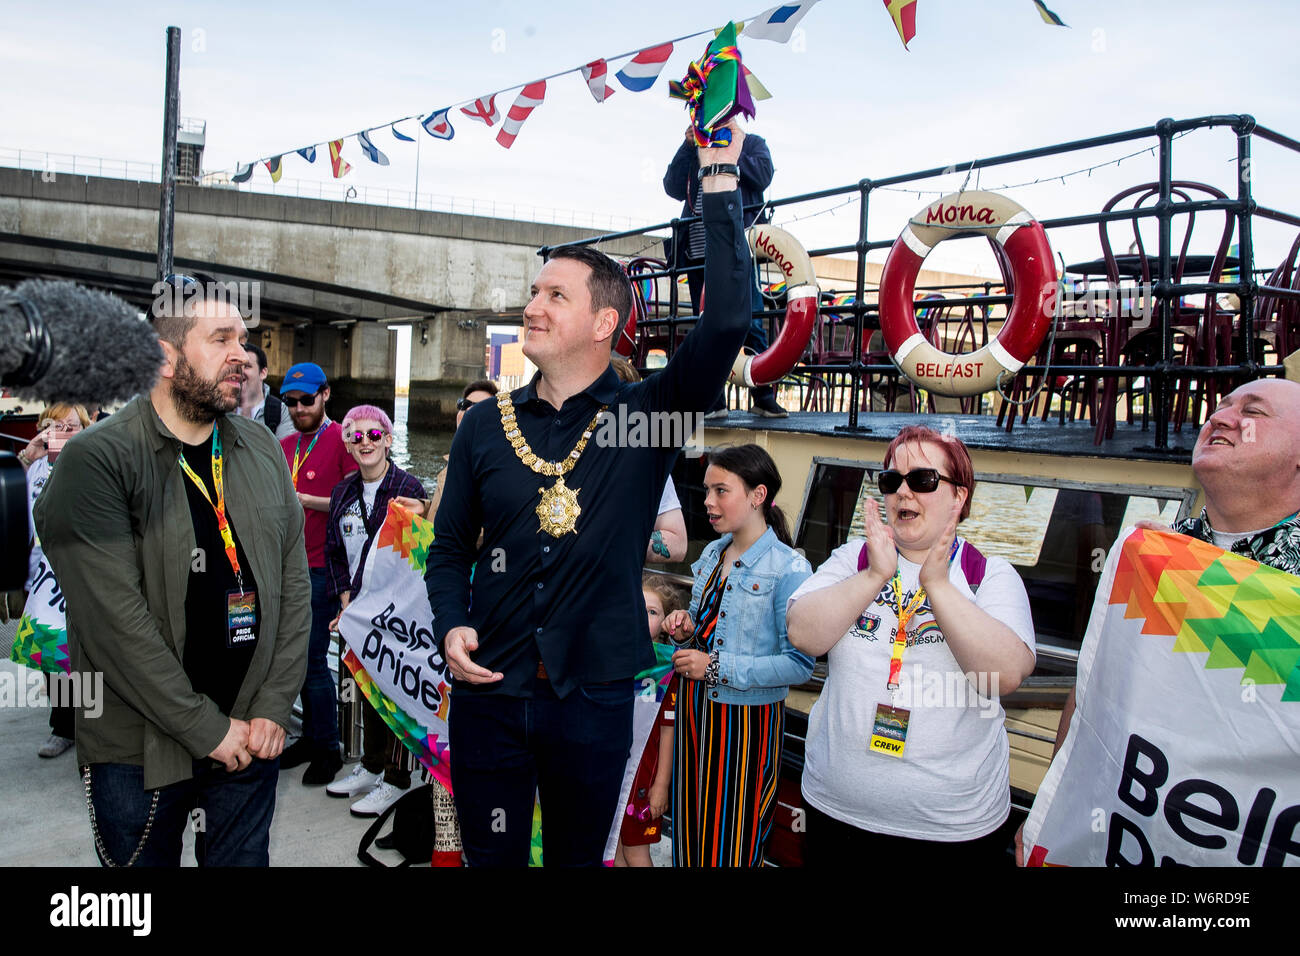 Maire de Belfast John Finucane vagues du drapeau arc-en-ciel qui lui a été présenté par la fierté des militants, à la suite d'une flottille de bateaux portant des drapeaux arc-en-ciel en avant de la Belfast Pride Parade le samedi. Banque D'Images